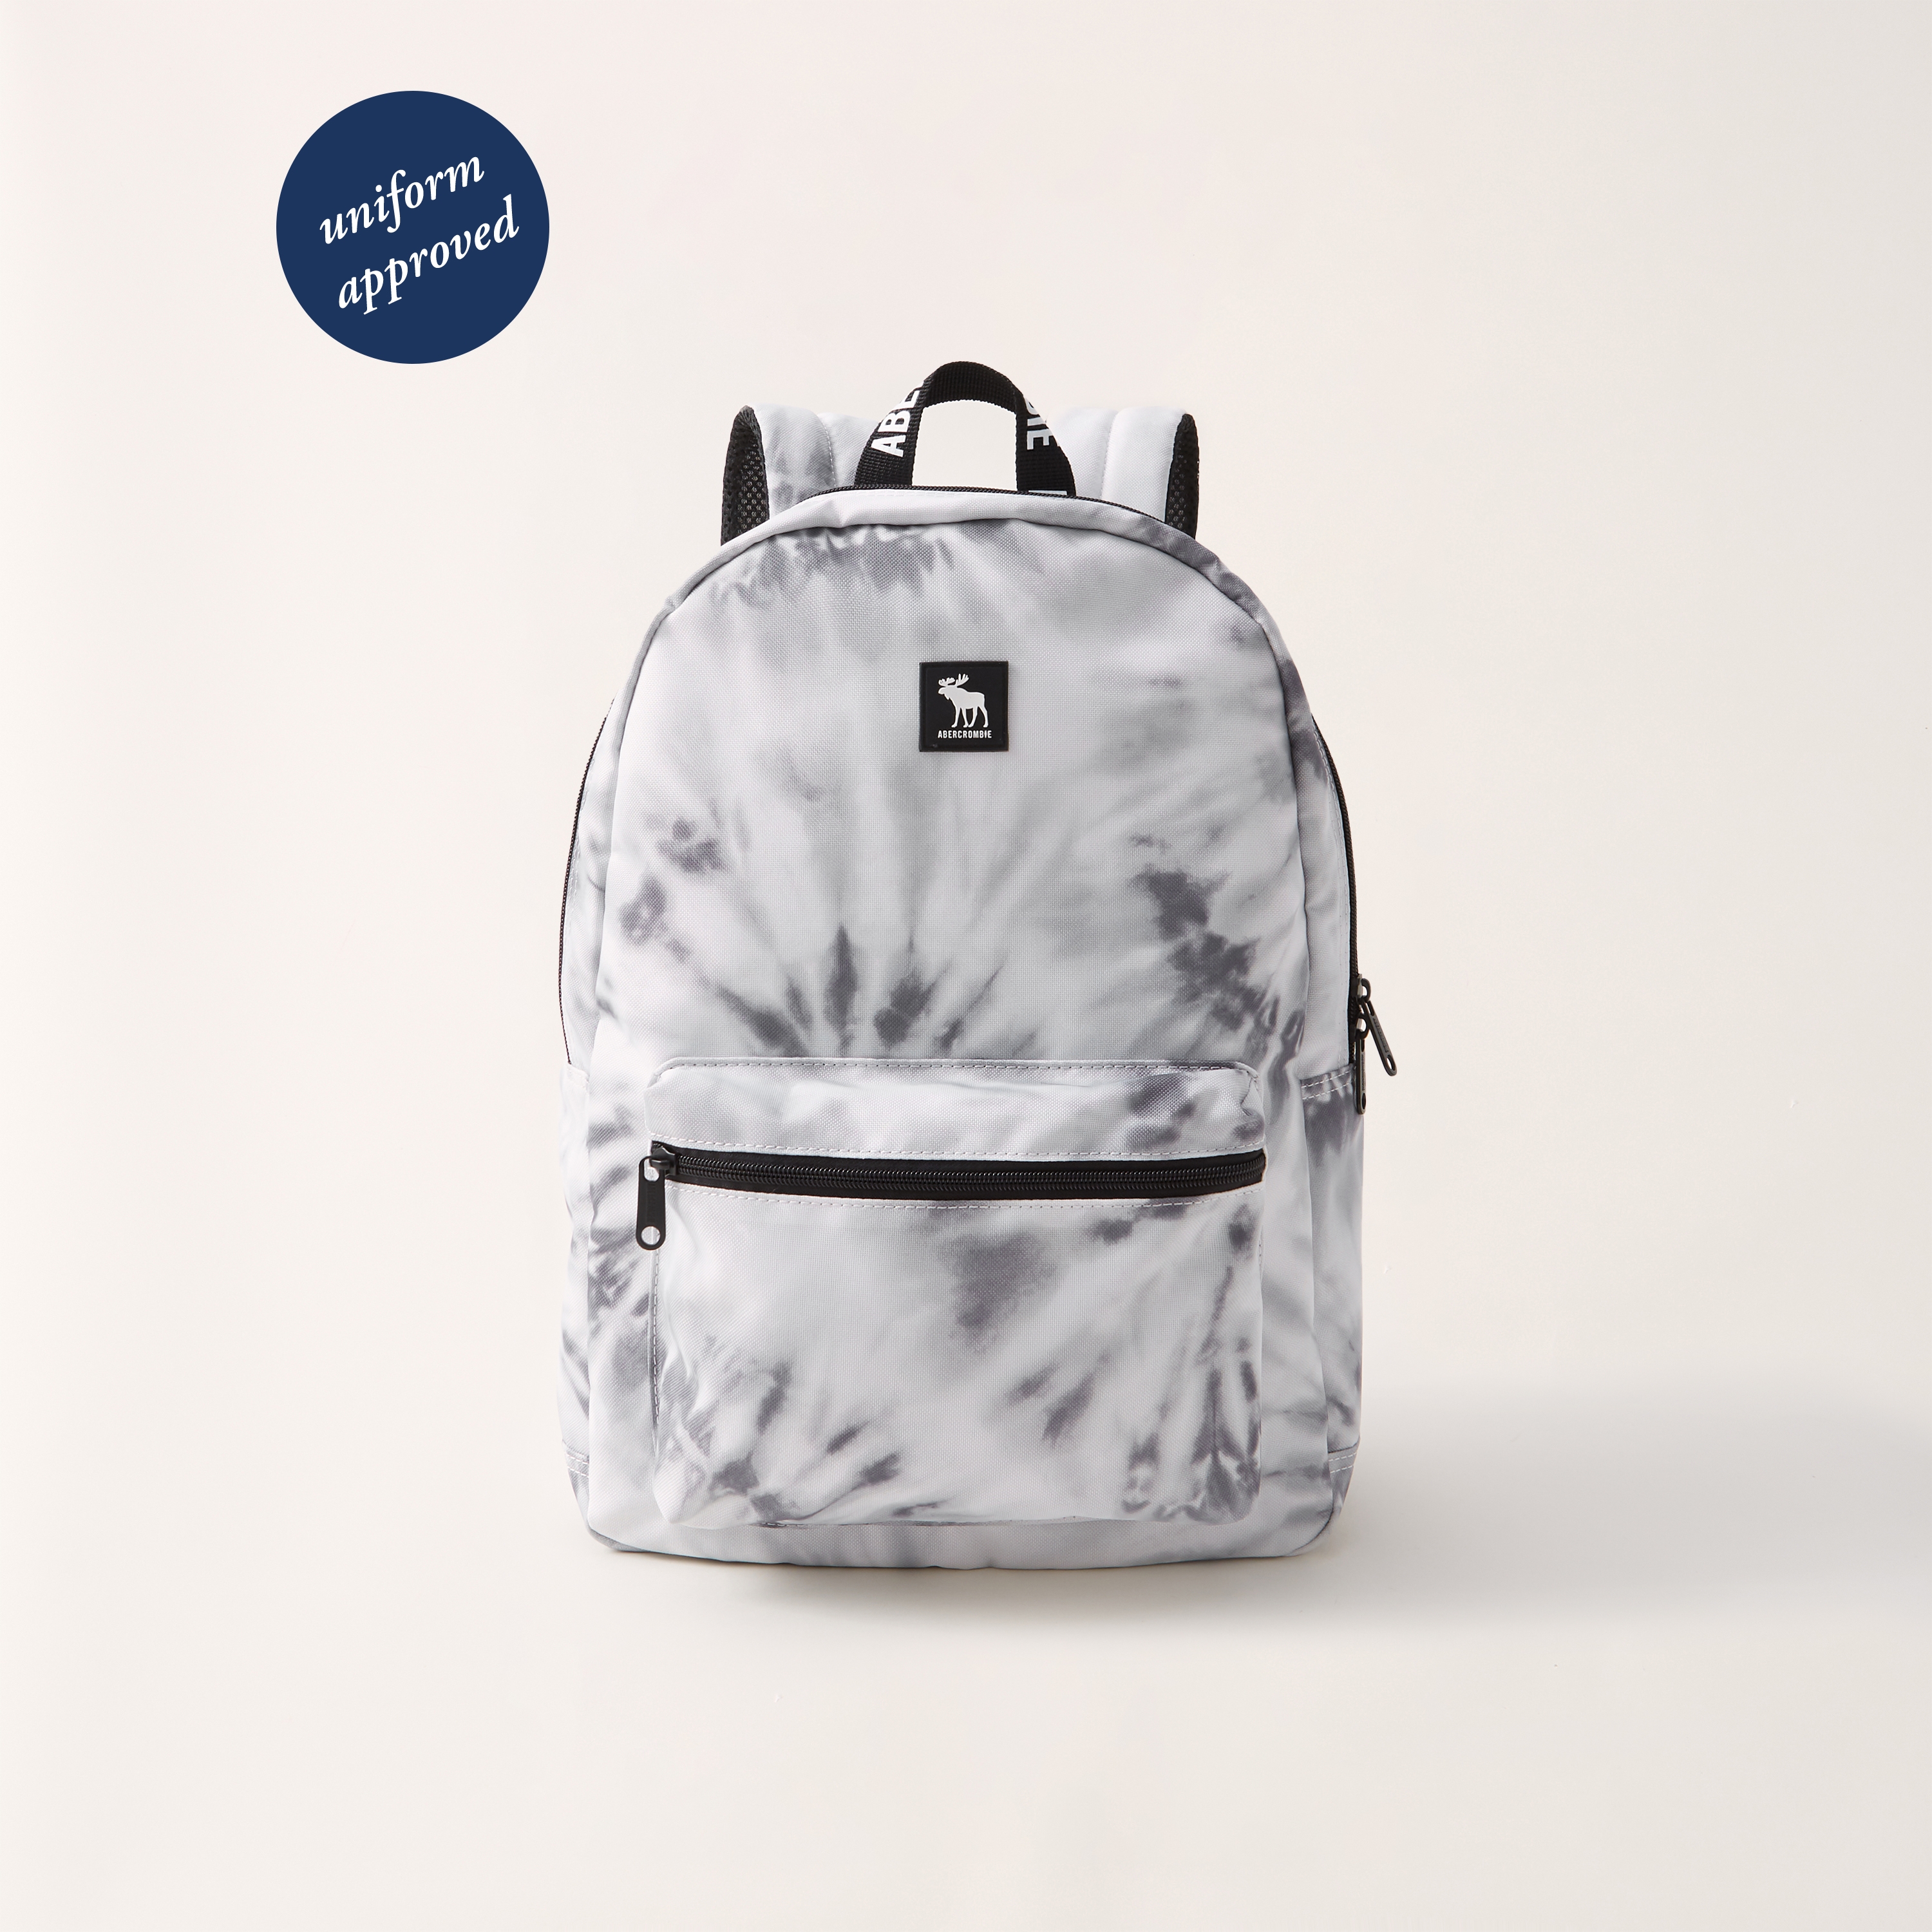 abercrombie backpacks for school